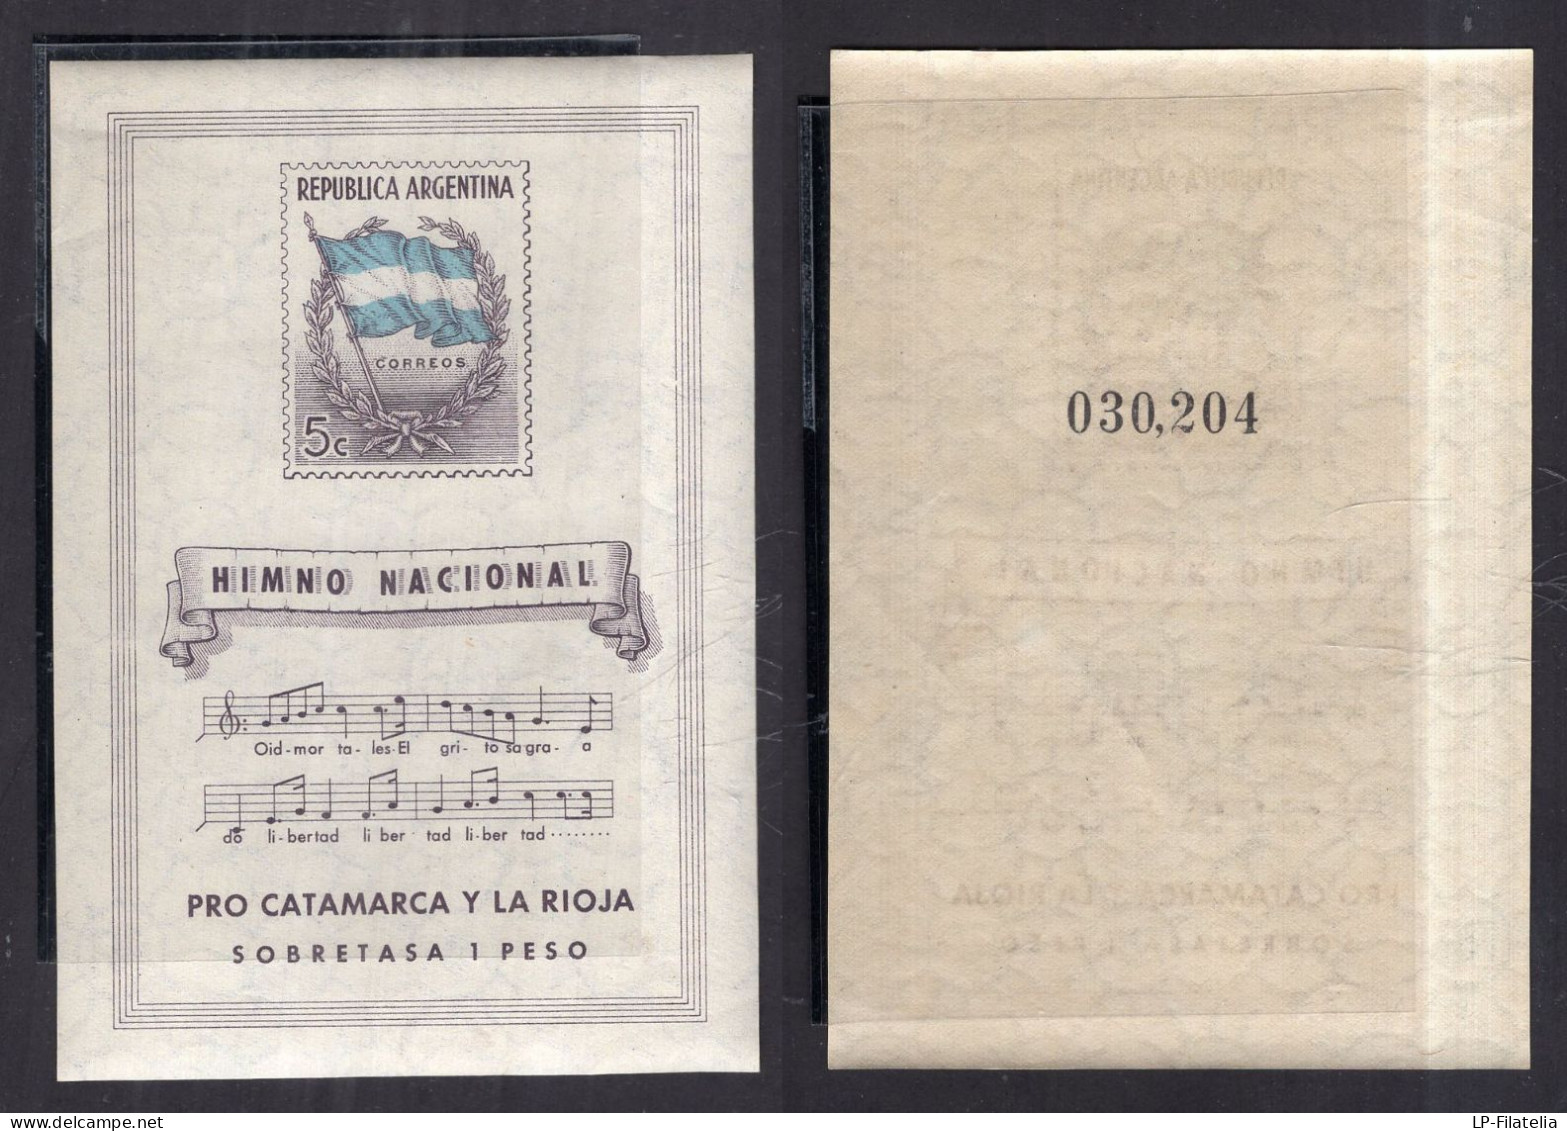 Argentina - 1944 - Hinmo Nacional - Pro Catamarca Y La Rioja - MNH - Neufs